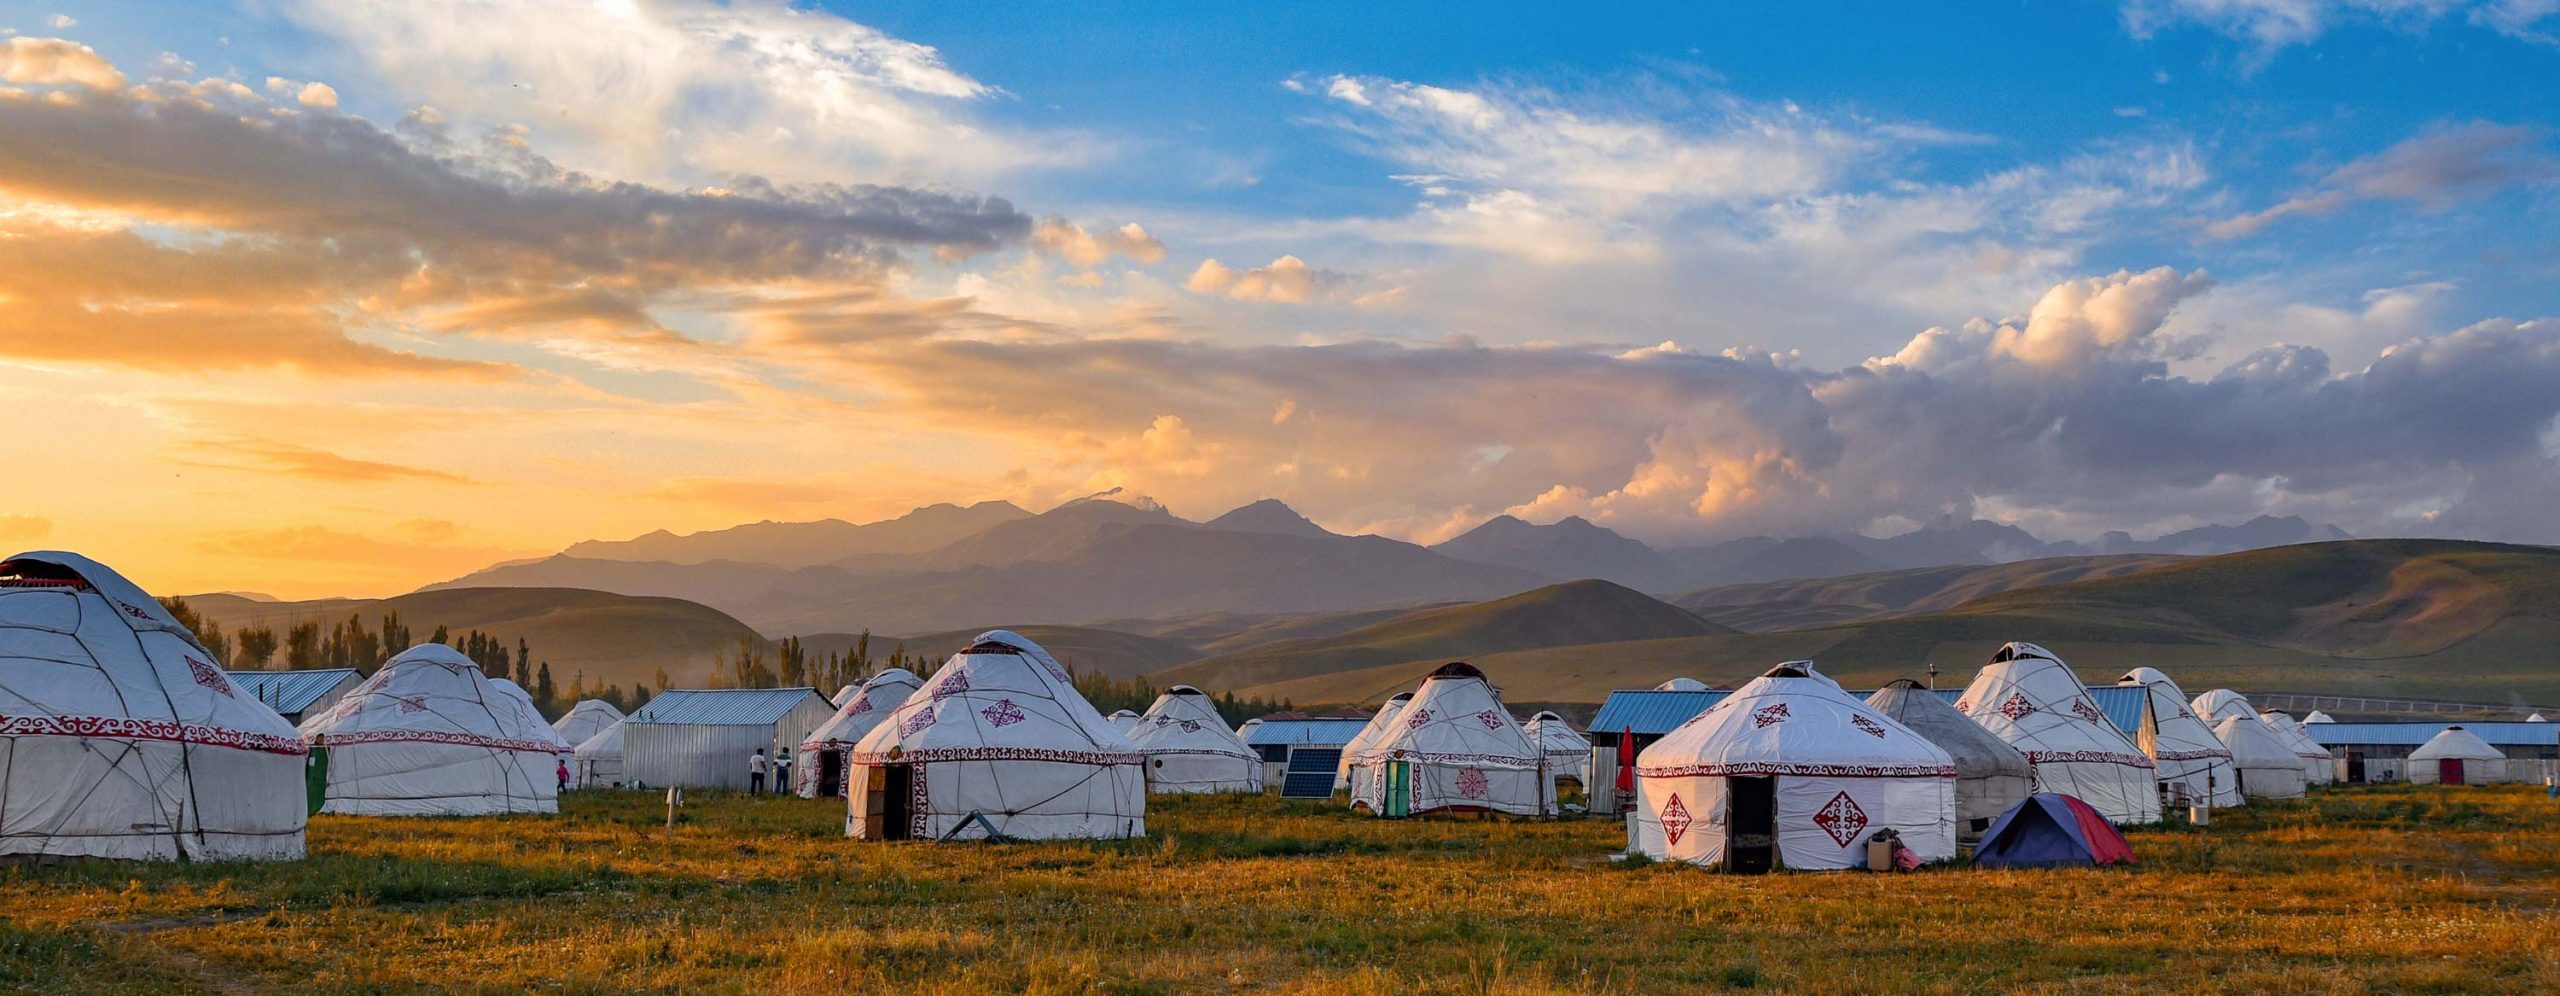 Handcraft Felt Yurt from Kazakhstan / Kyrgyzstan